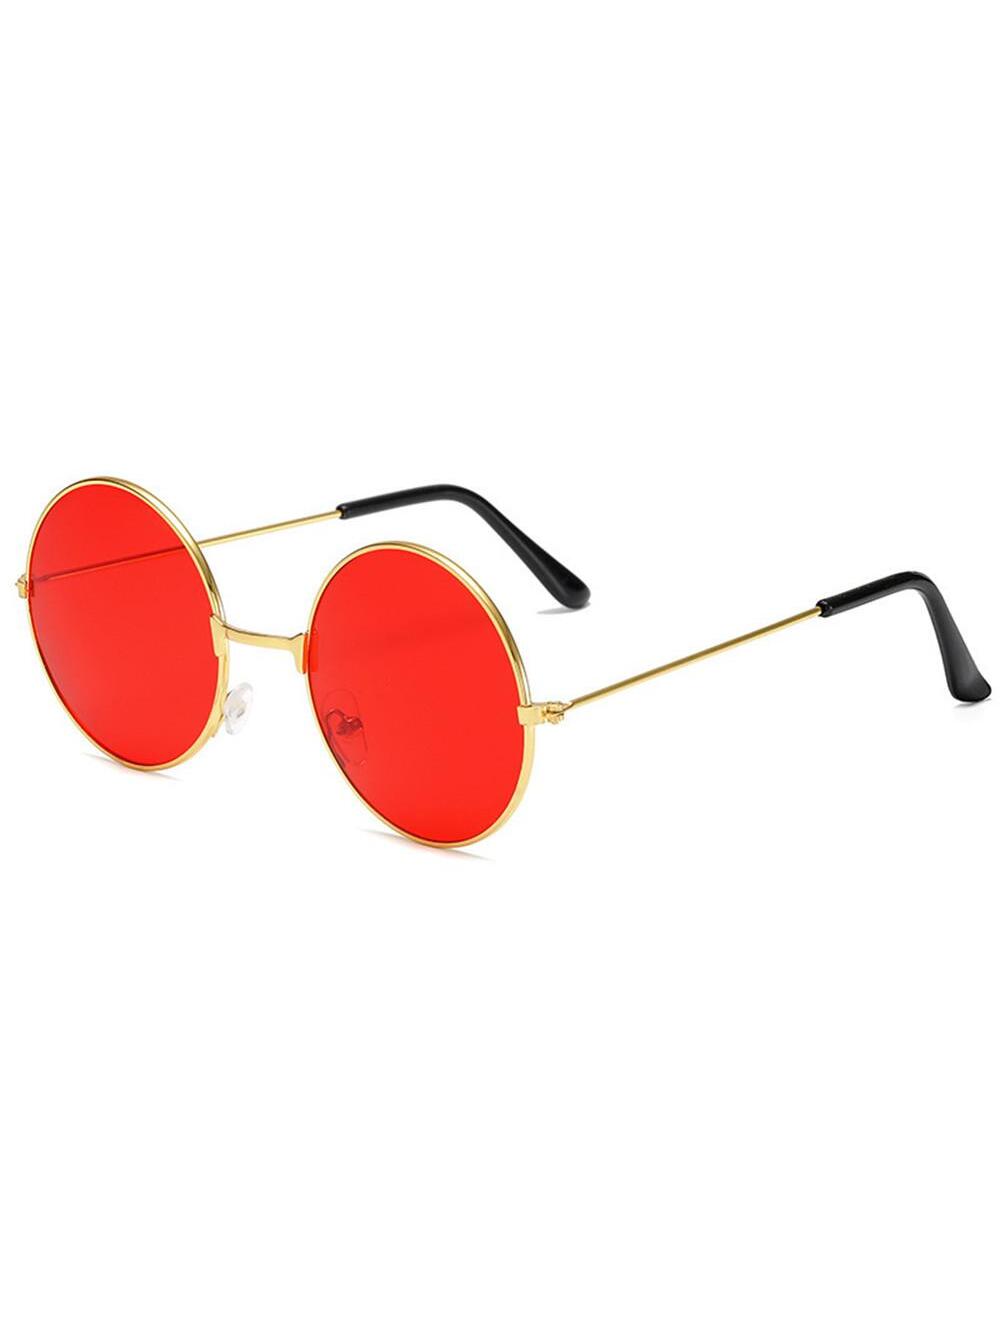 Ретро круглые солнцезащитные очки в стиле хиппи, красный